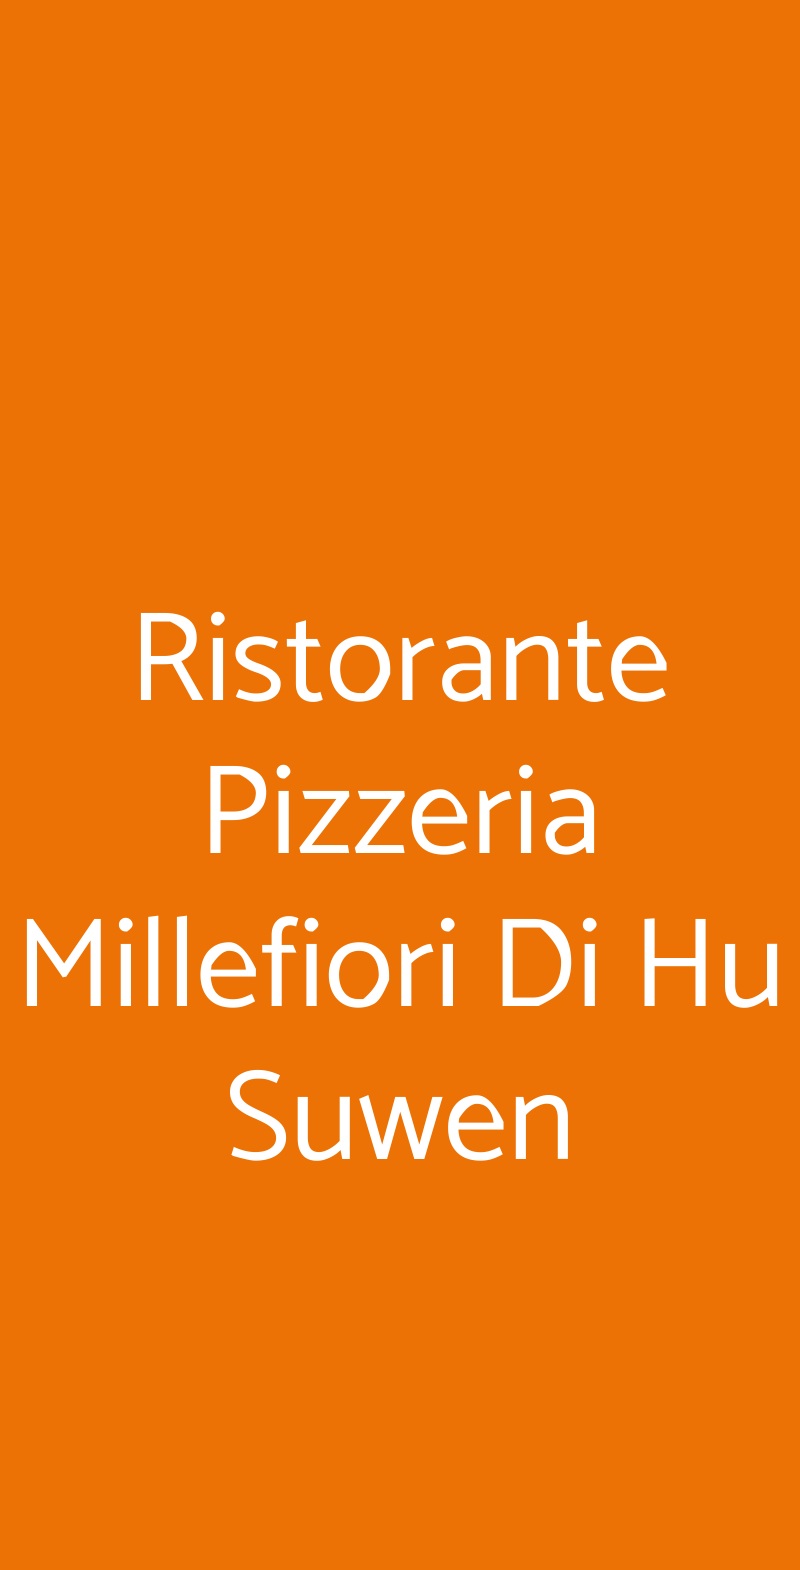 Ristorante Pizzeria Millefiori Di Hu Suwen Torino menù 1 pagina